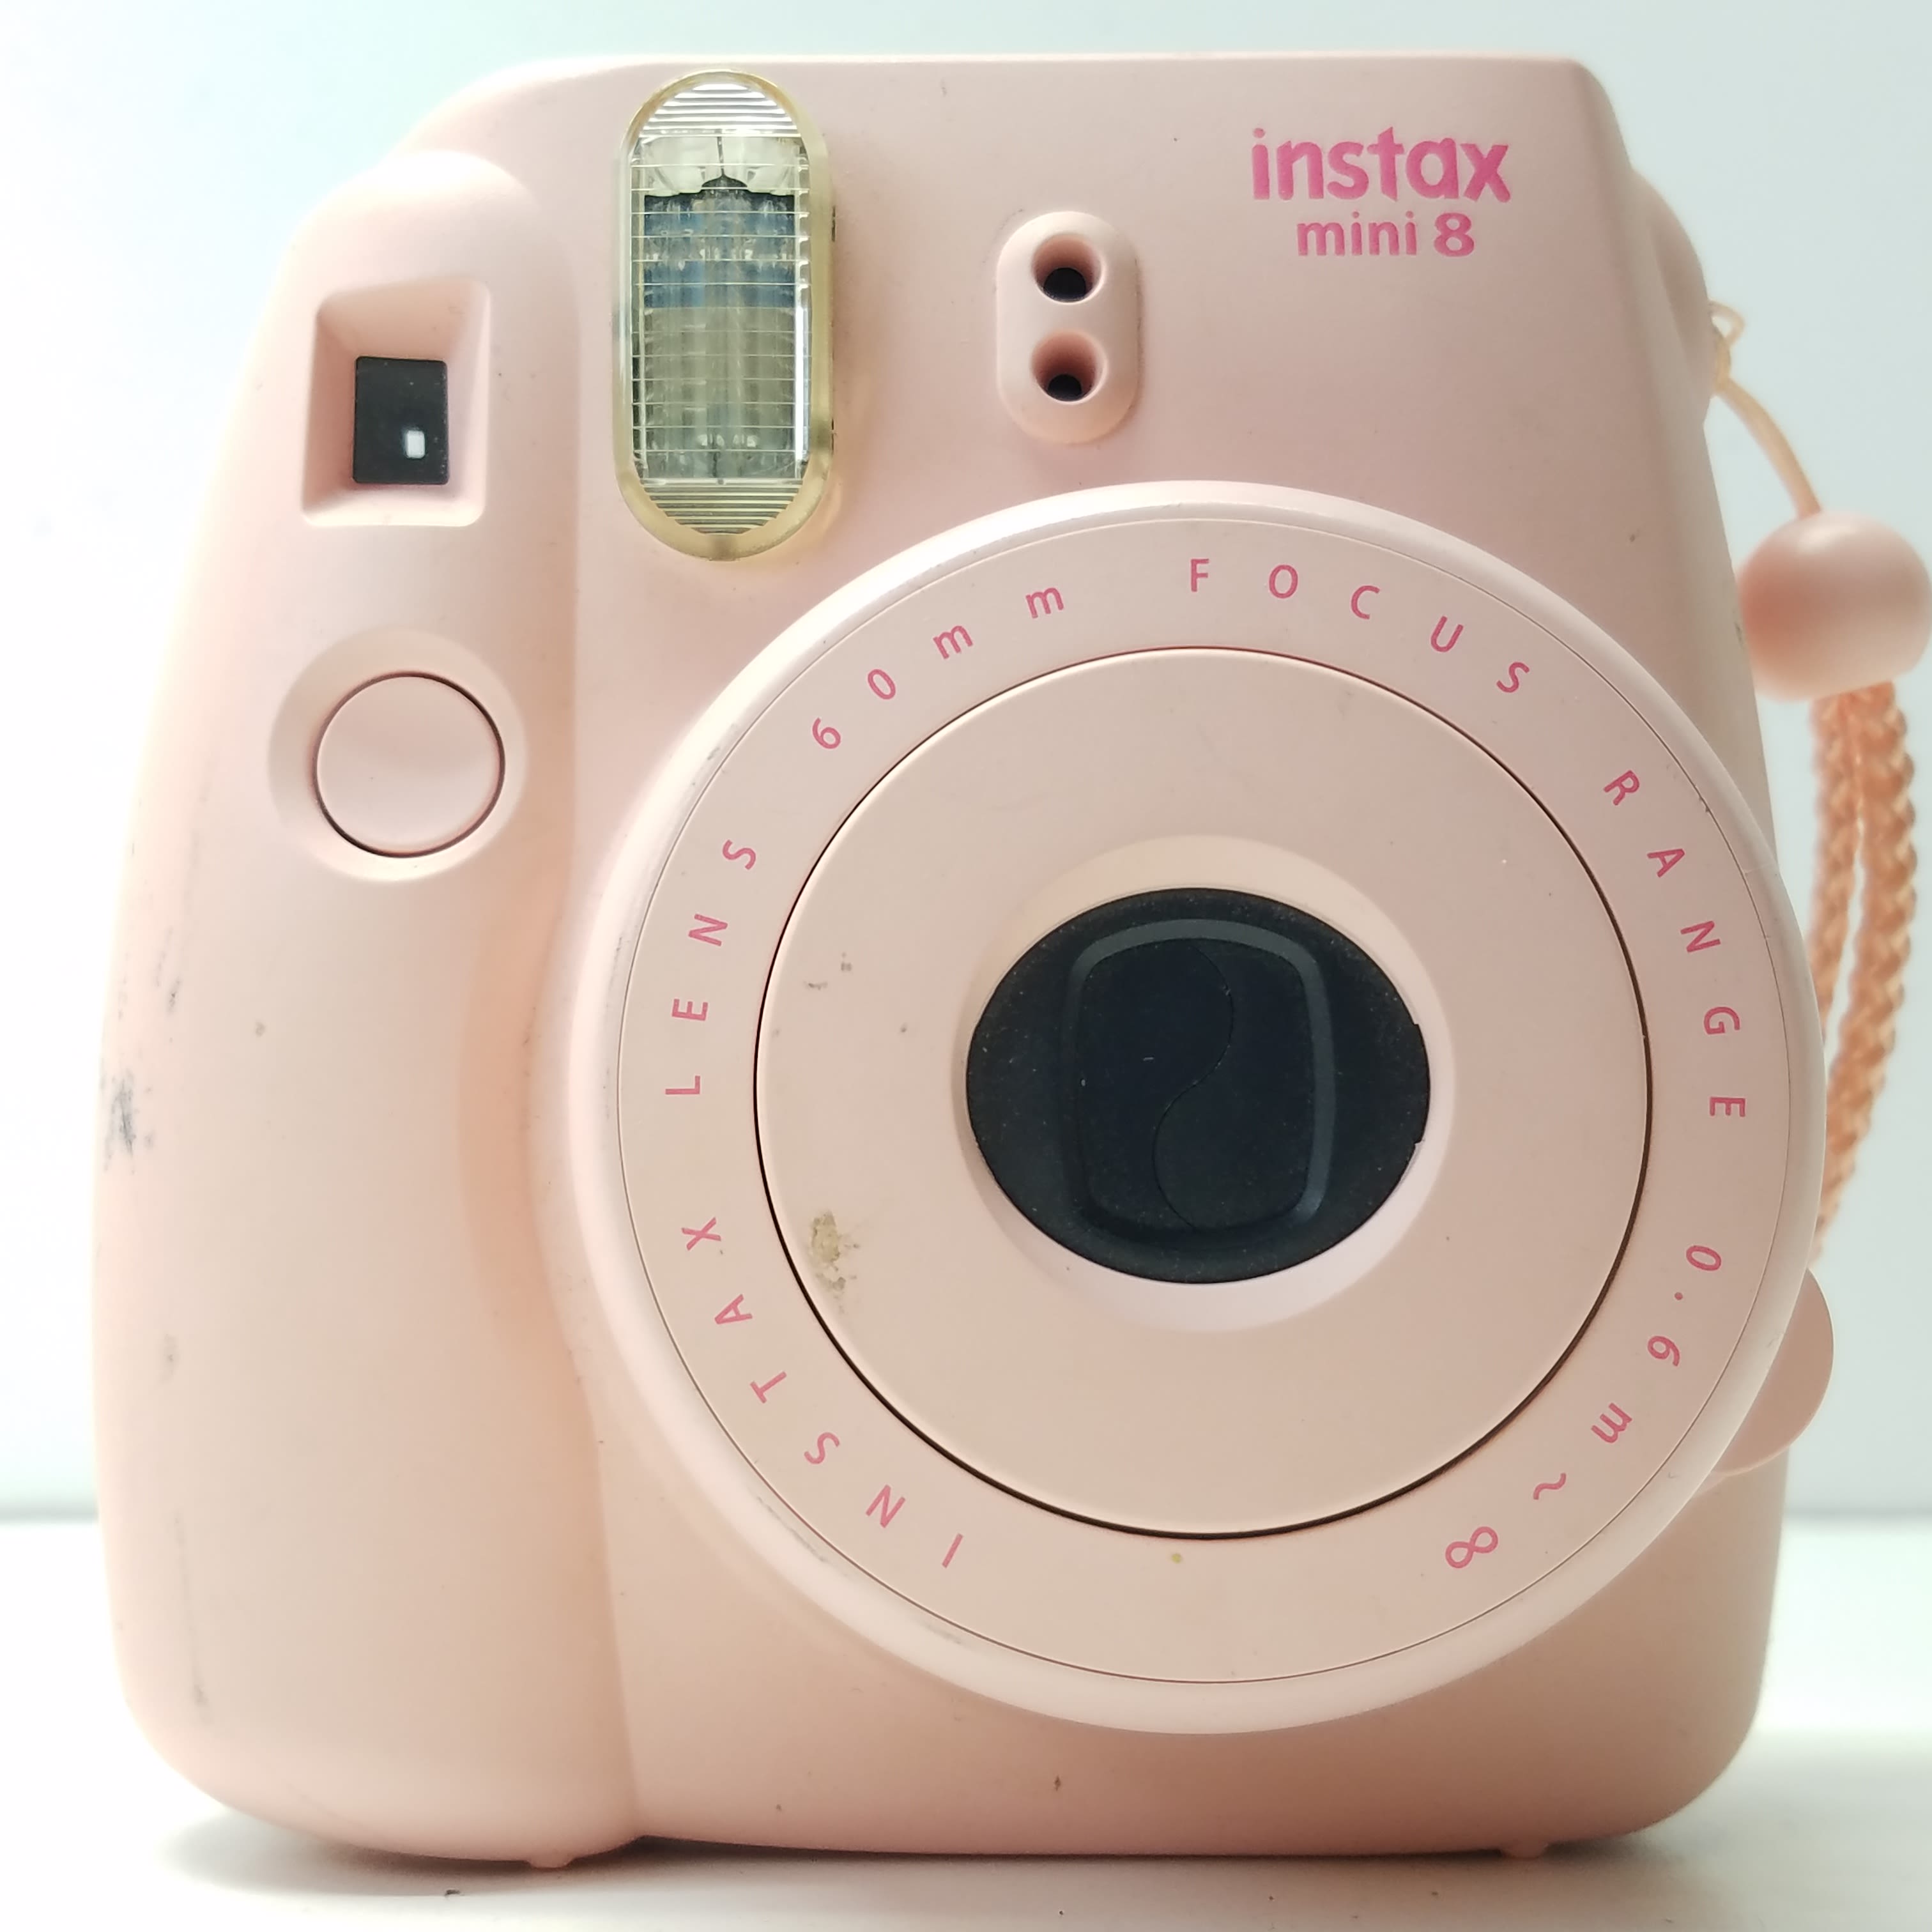  Fujifilm Instax Mini 8 Instant Camera (Pink